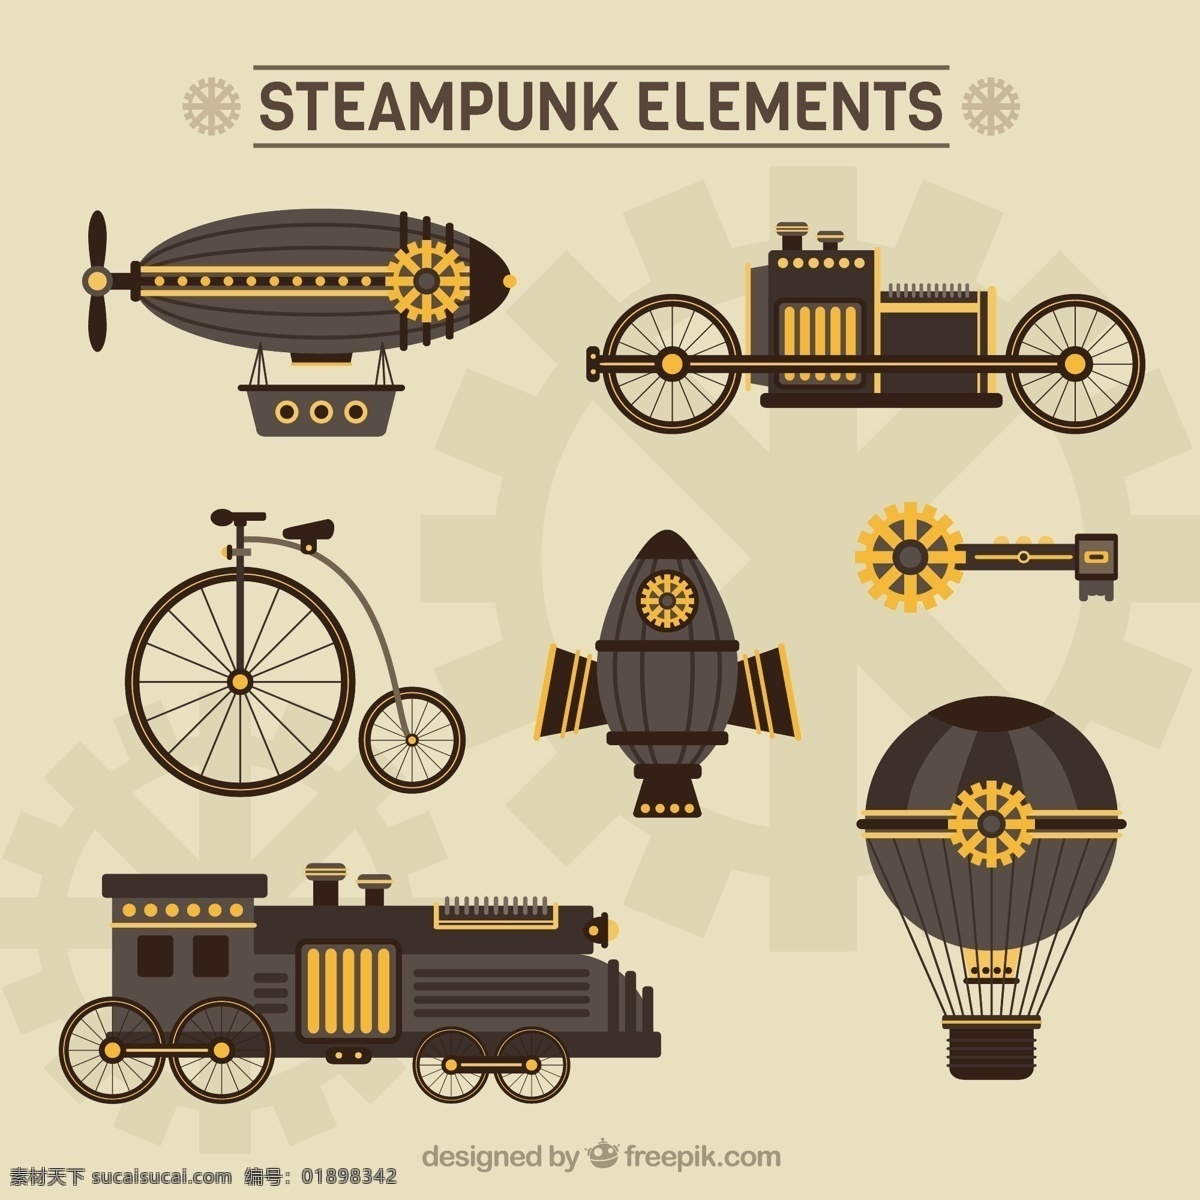 手工 绘制 机械 蒸汽 朋 克 元 复古 艺术 气球 金属 火车 齿轮 钥匙 绘图 机床 工业 维多利亚时代 幻想 古董